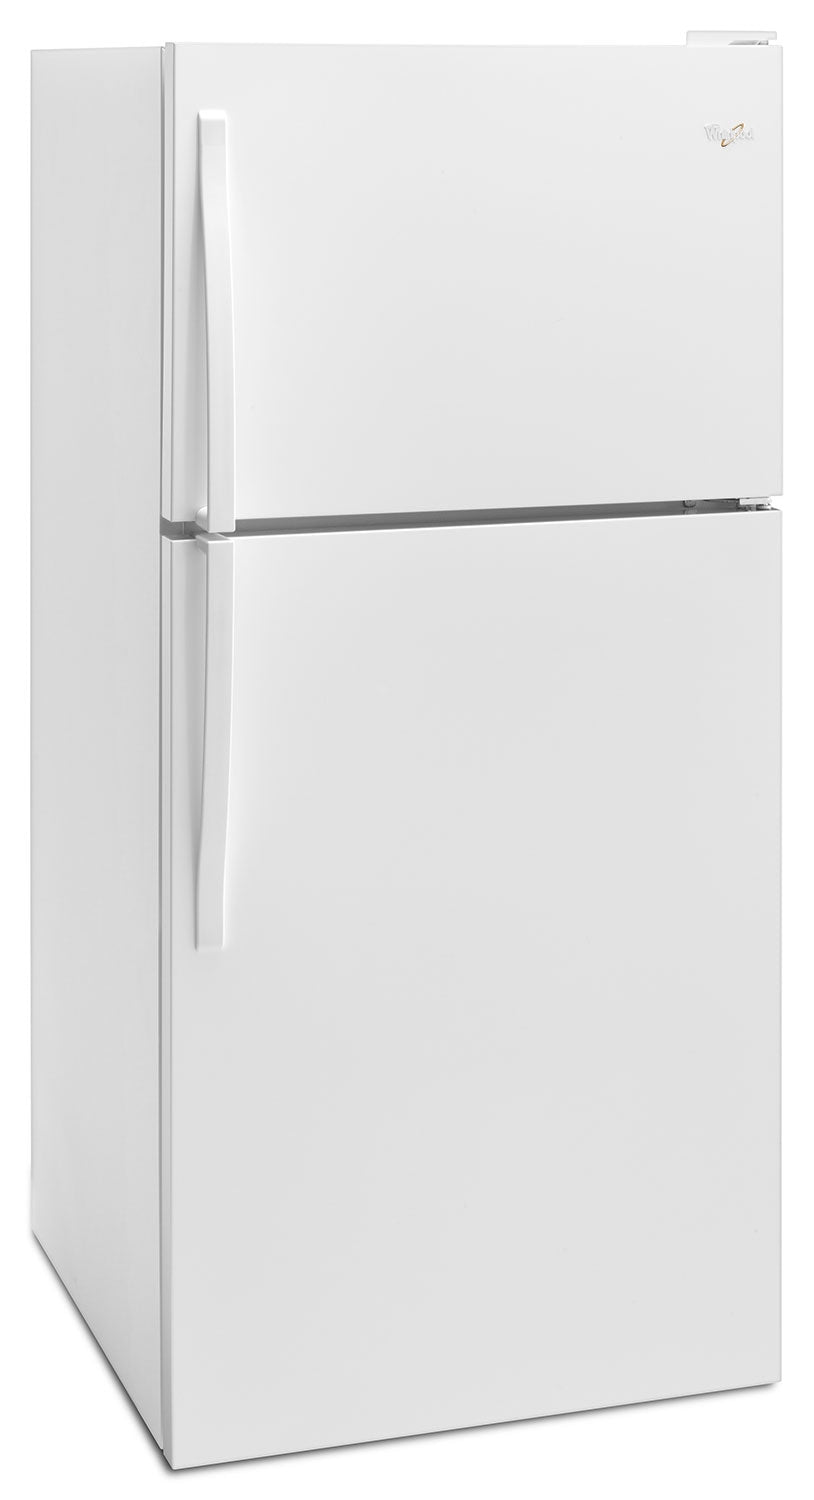 Whirlpool White Top-Freezer Refrigerator (18.2 Cu. Ft.) WRT318FZDW